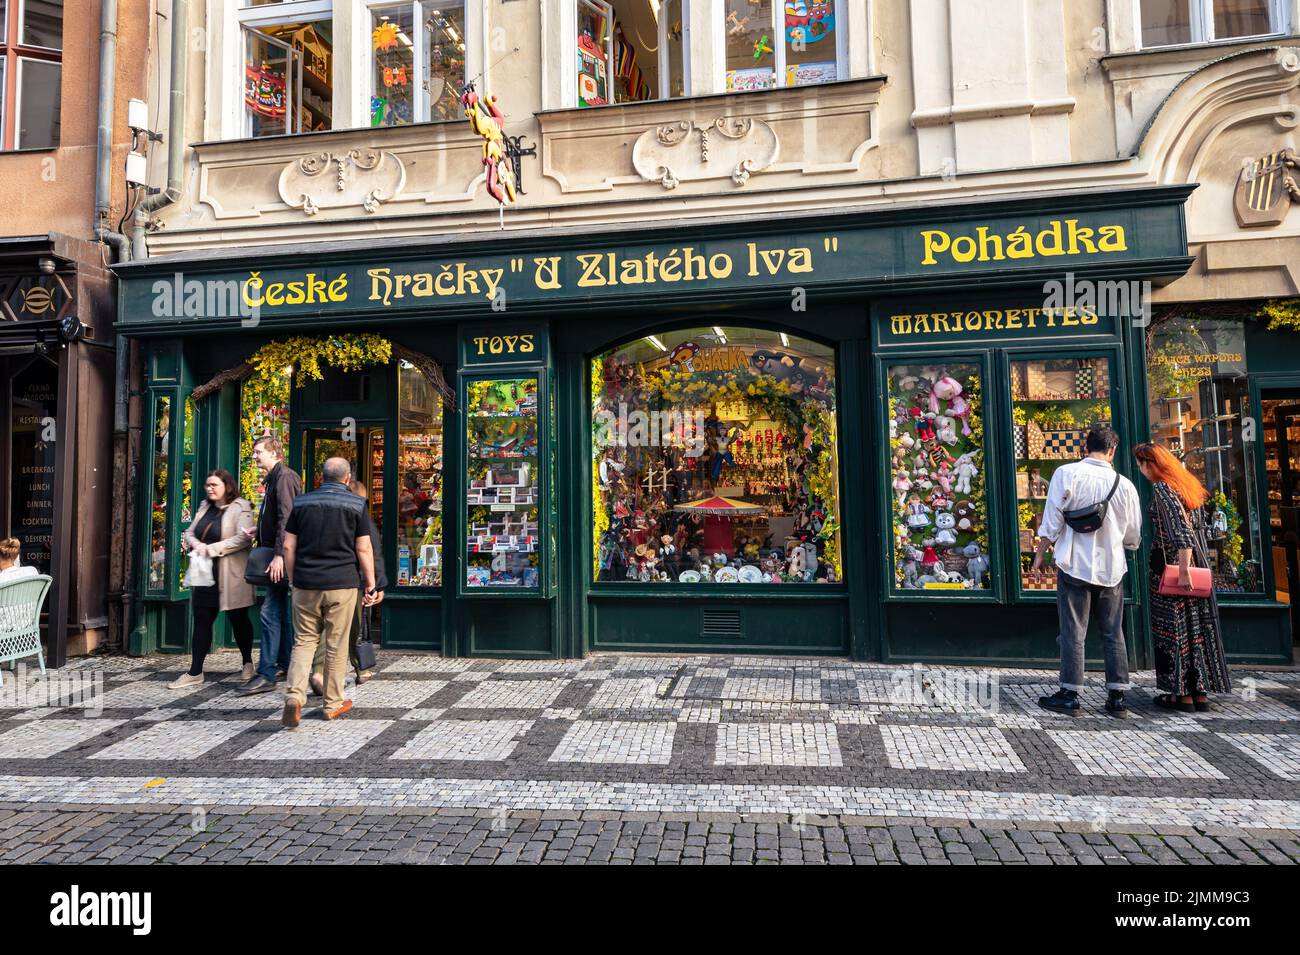 Dekorative Fassade eines alten Spielwarenladens in der Altstadt von Prag, Tschechien. Stockfoto